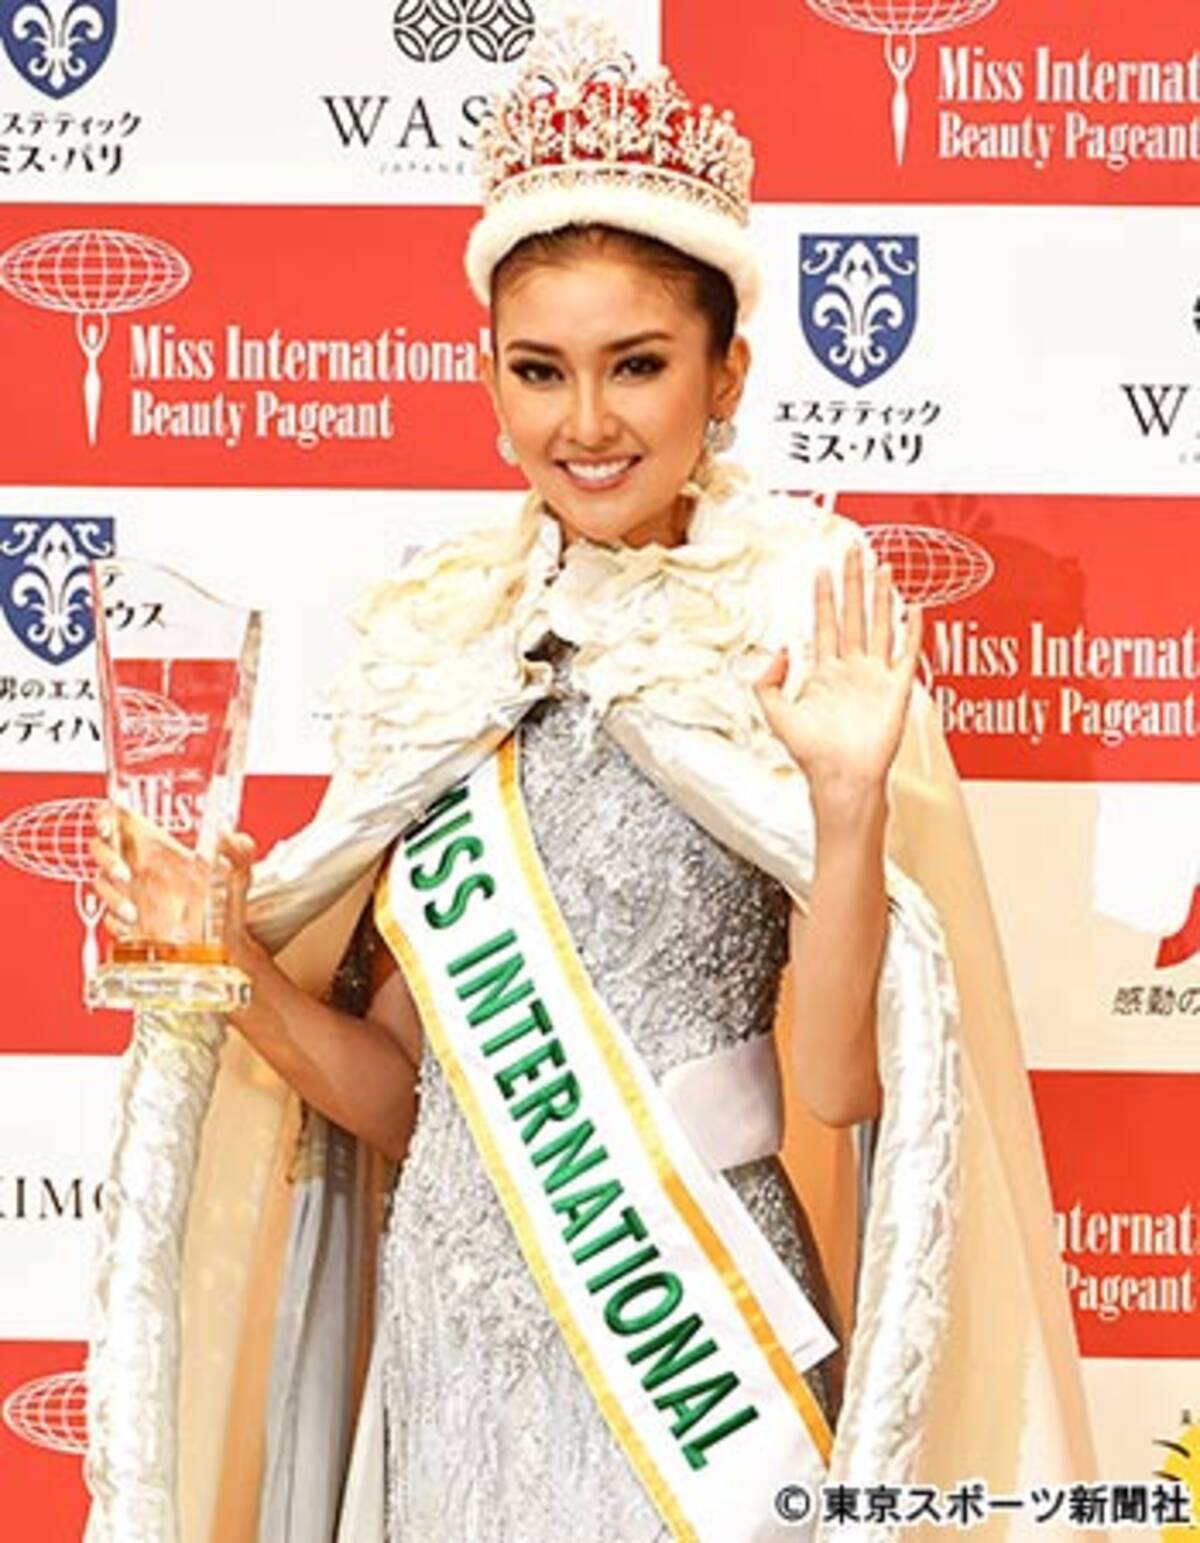 世界一の美女 はインドネシア代表 快挙をサポートした ３人の彼氏 17年11月15日 エキサイトニュース